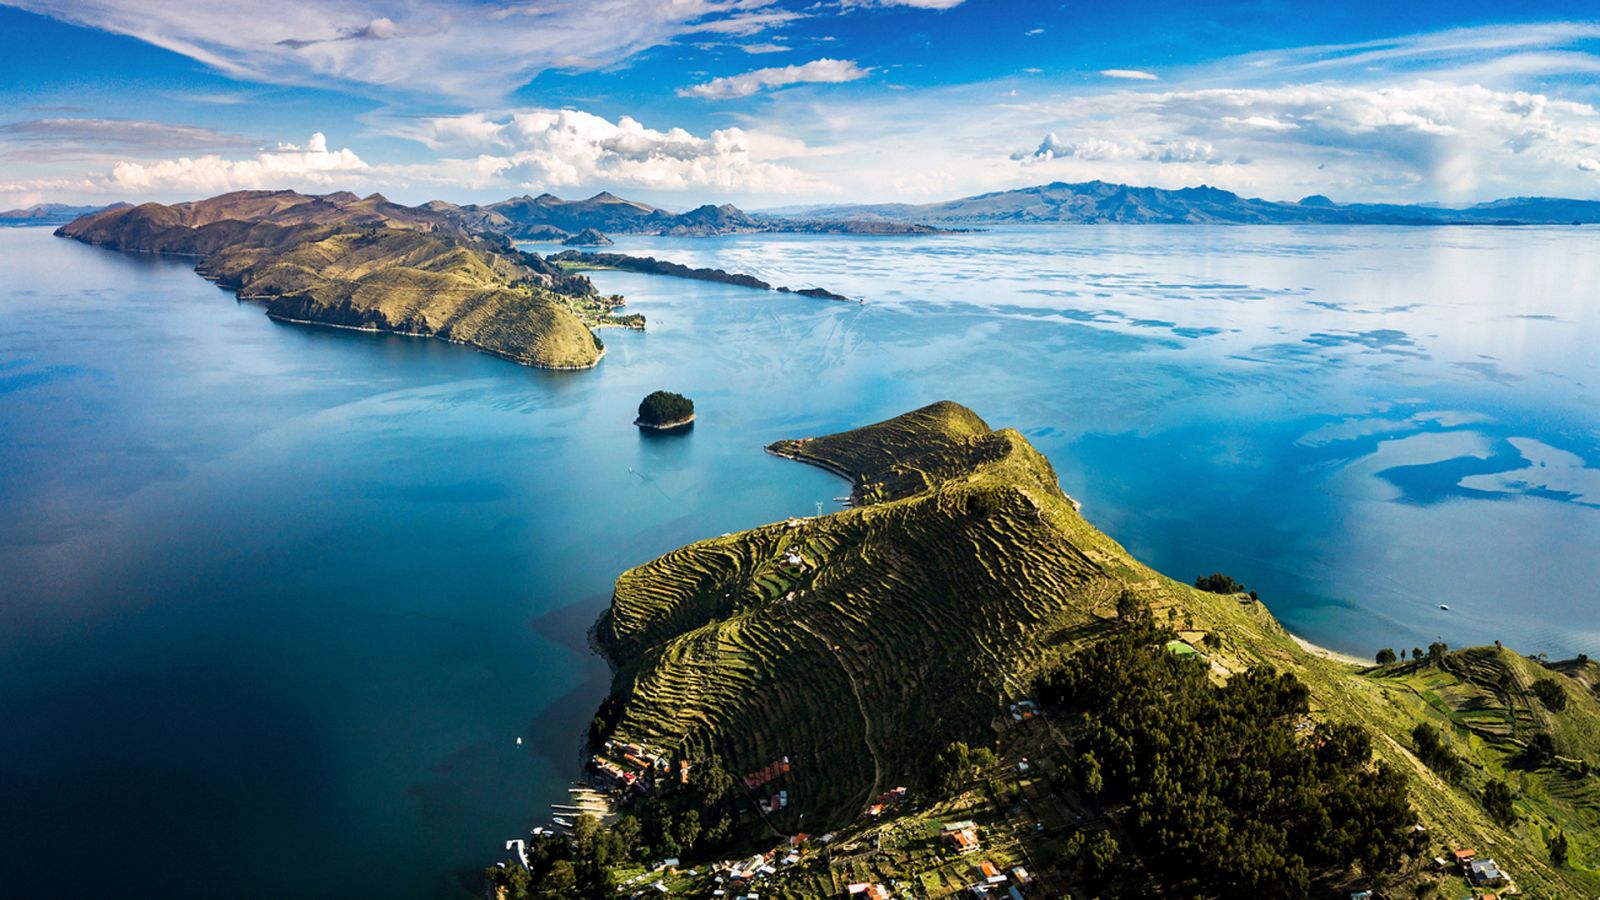 Turismo rural en el mundo - Bolivia 2: Lago Titicaca y el altiplano andino